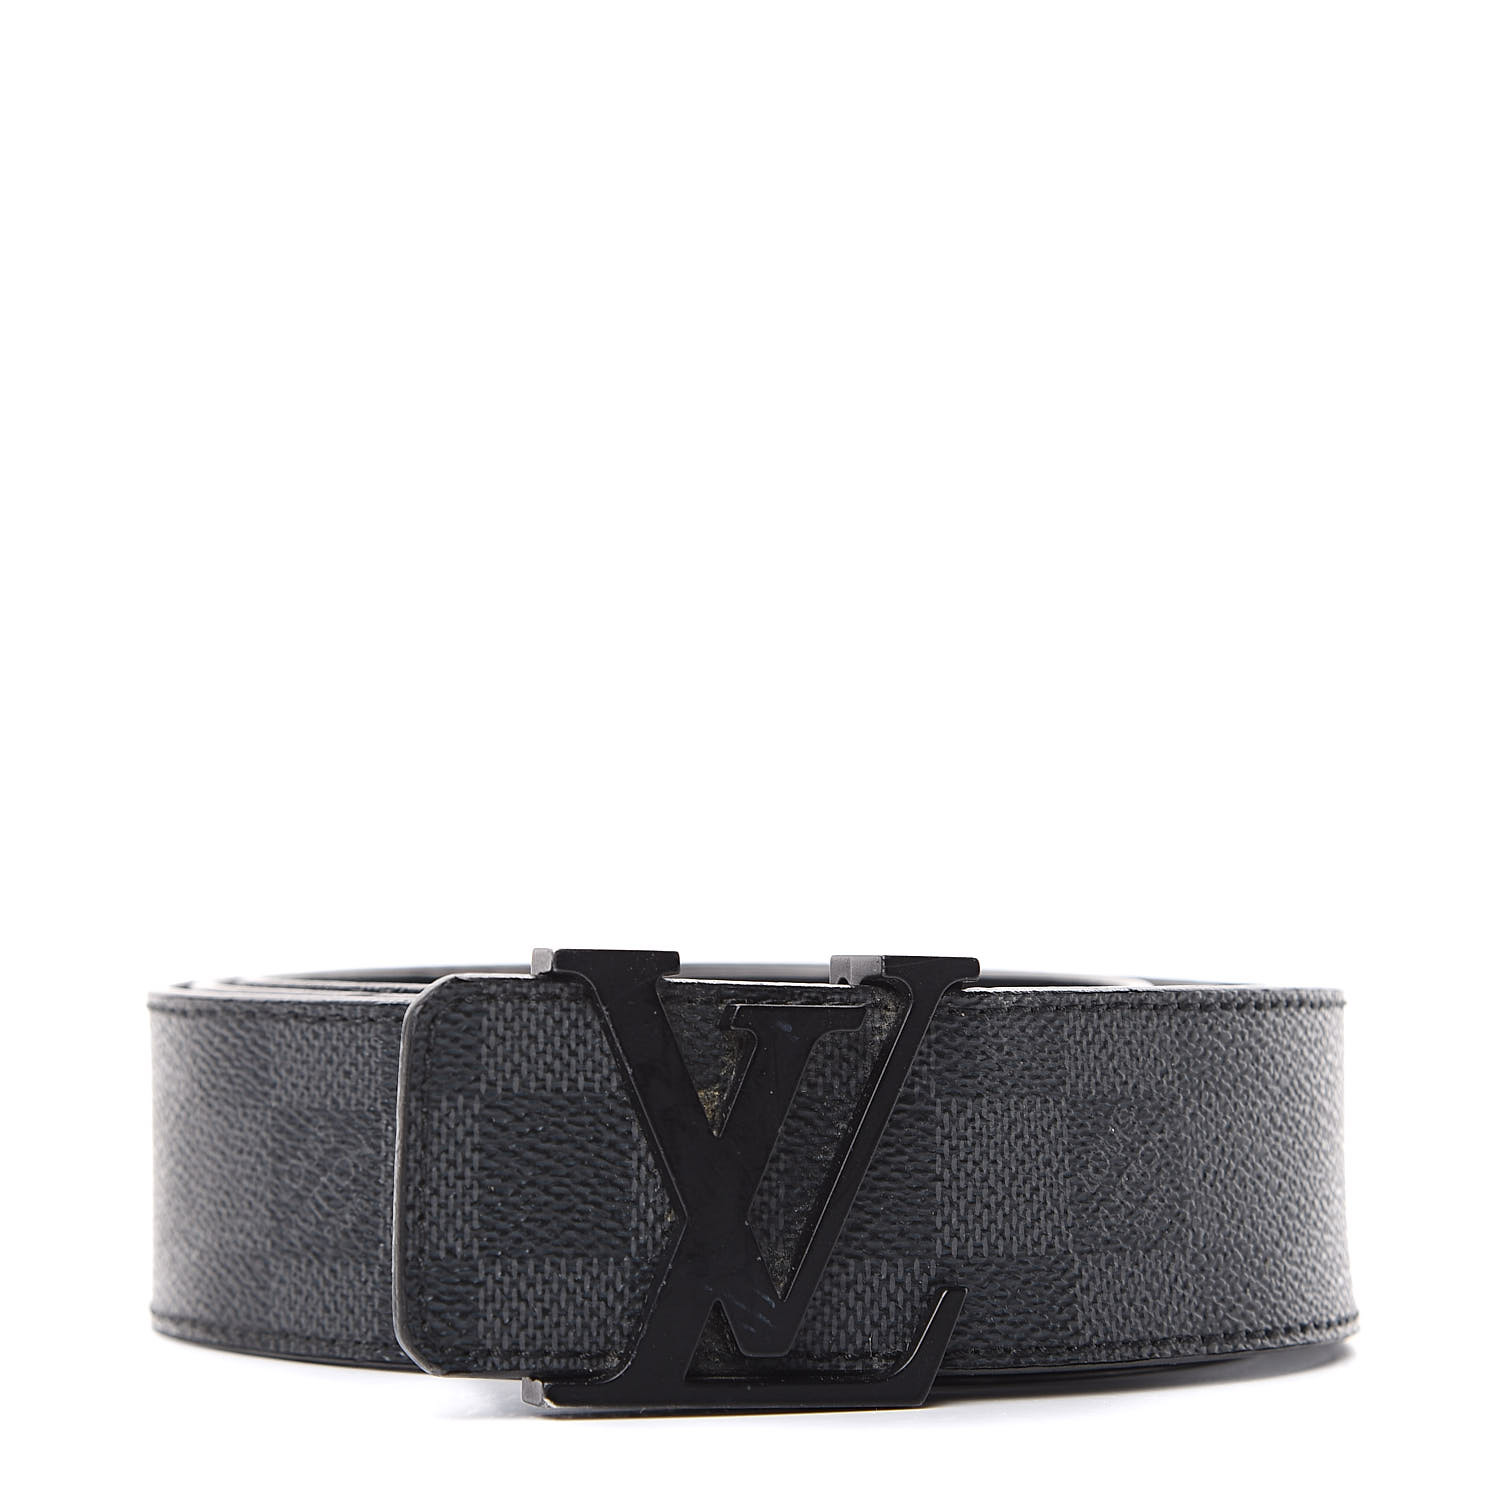 Shop authentic Louis Vuitton Monogram Initiales Belt at revogue